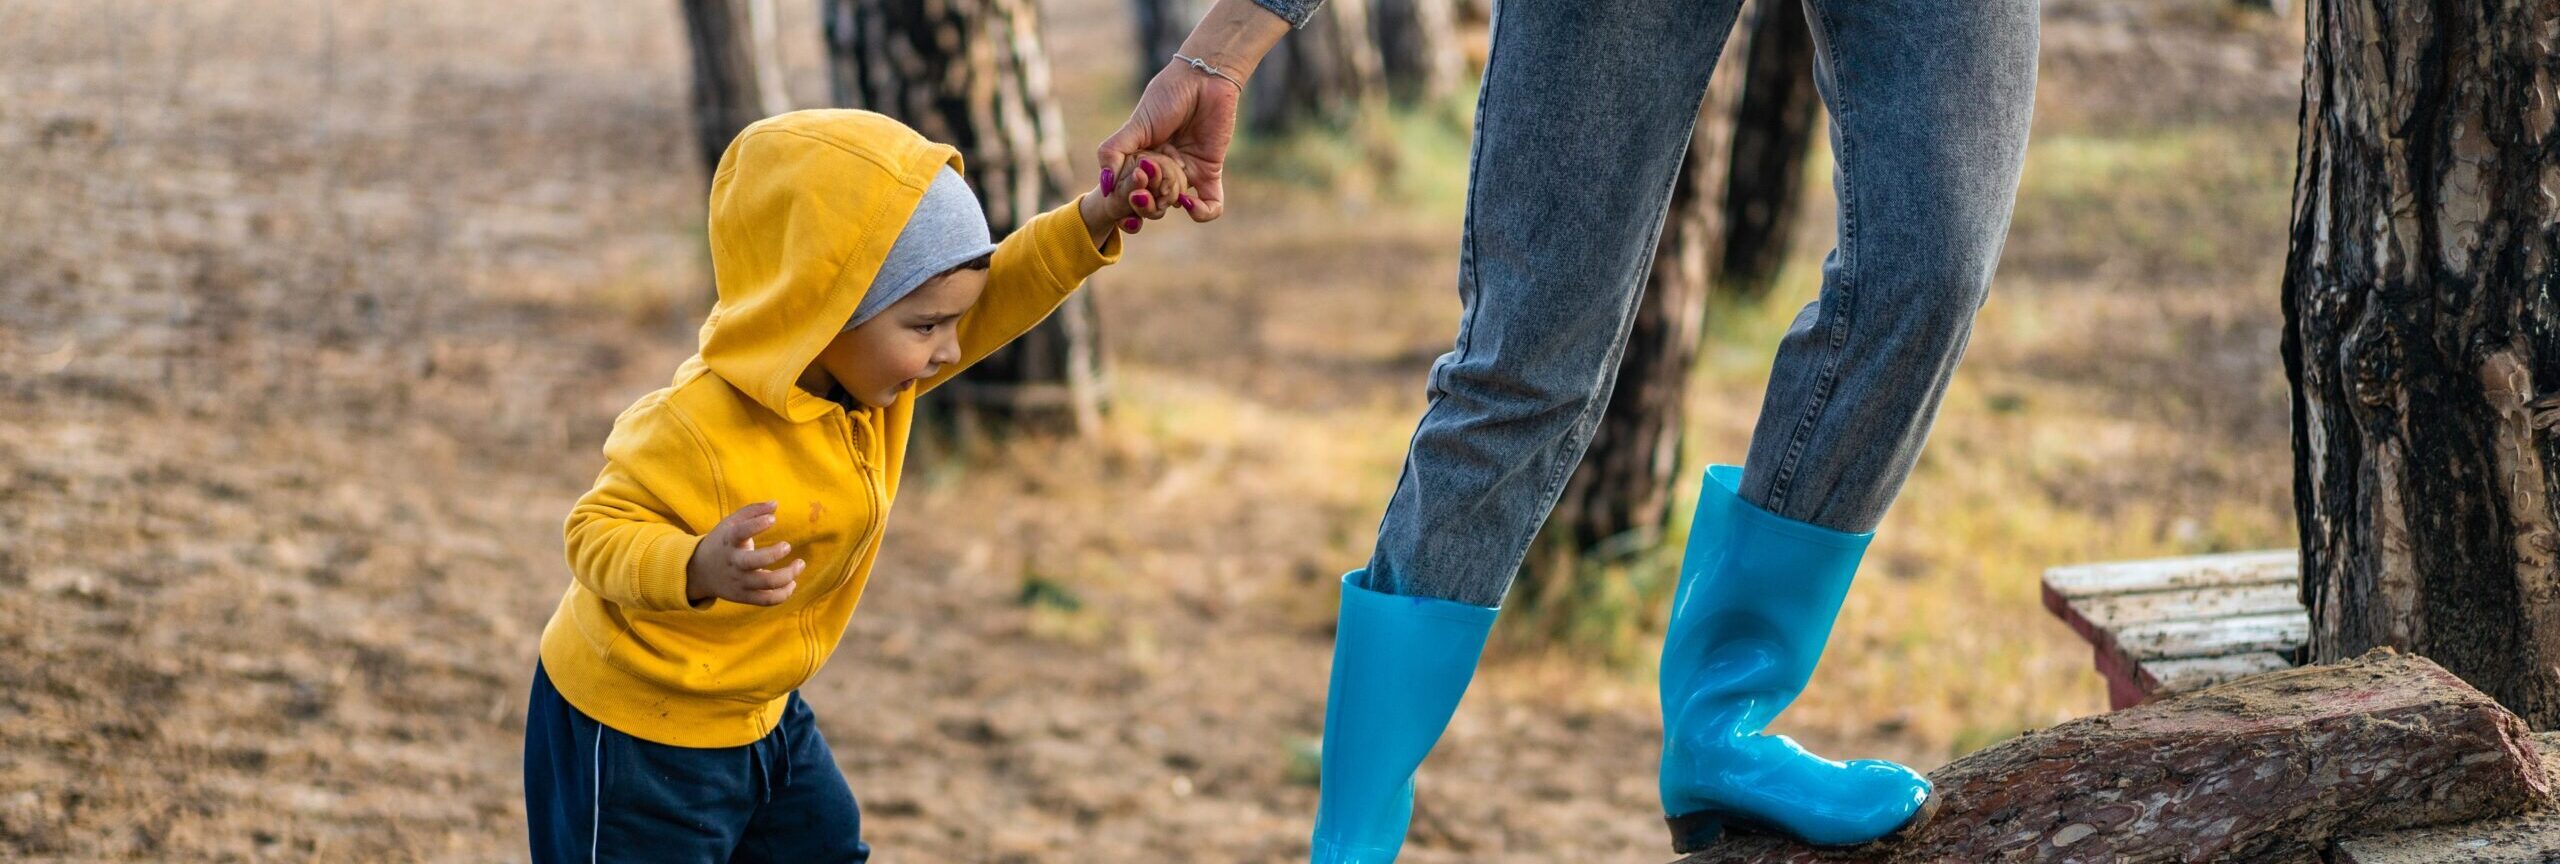 Ett barn går på en stock och håller en vuxen i handen